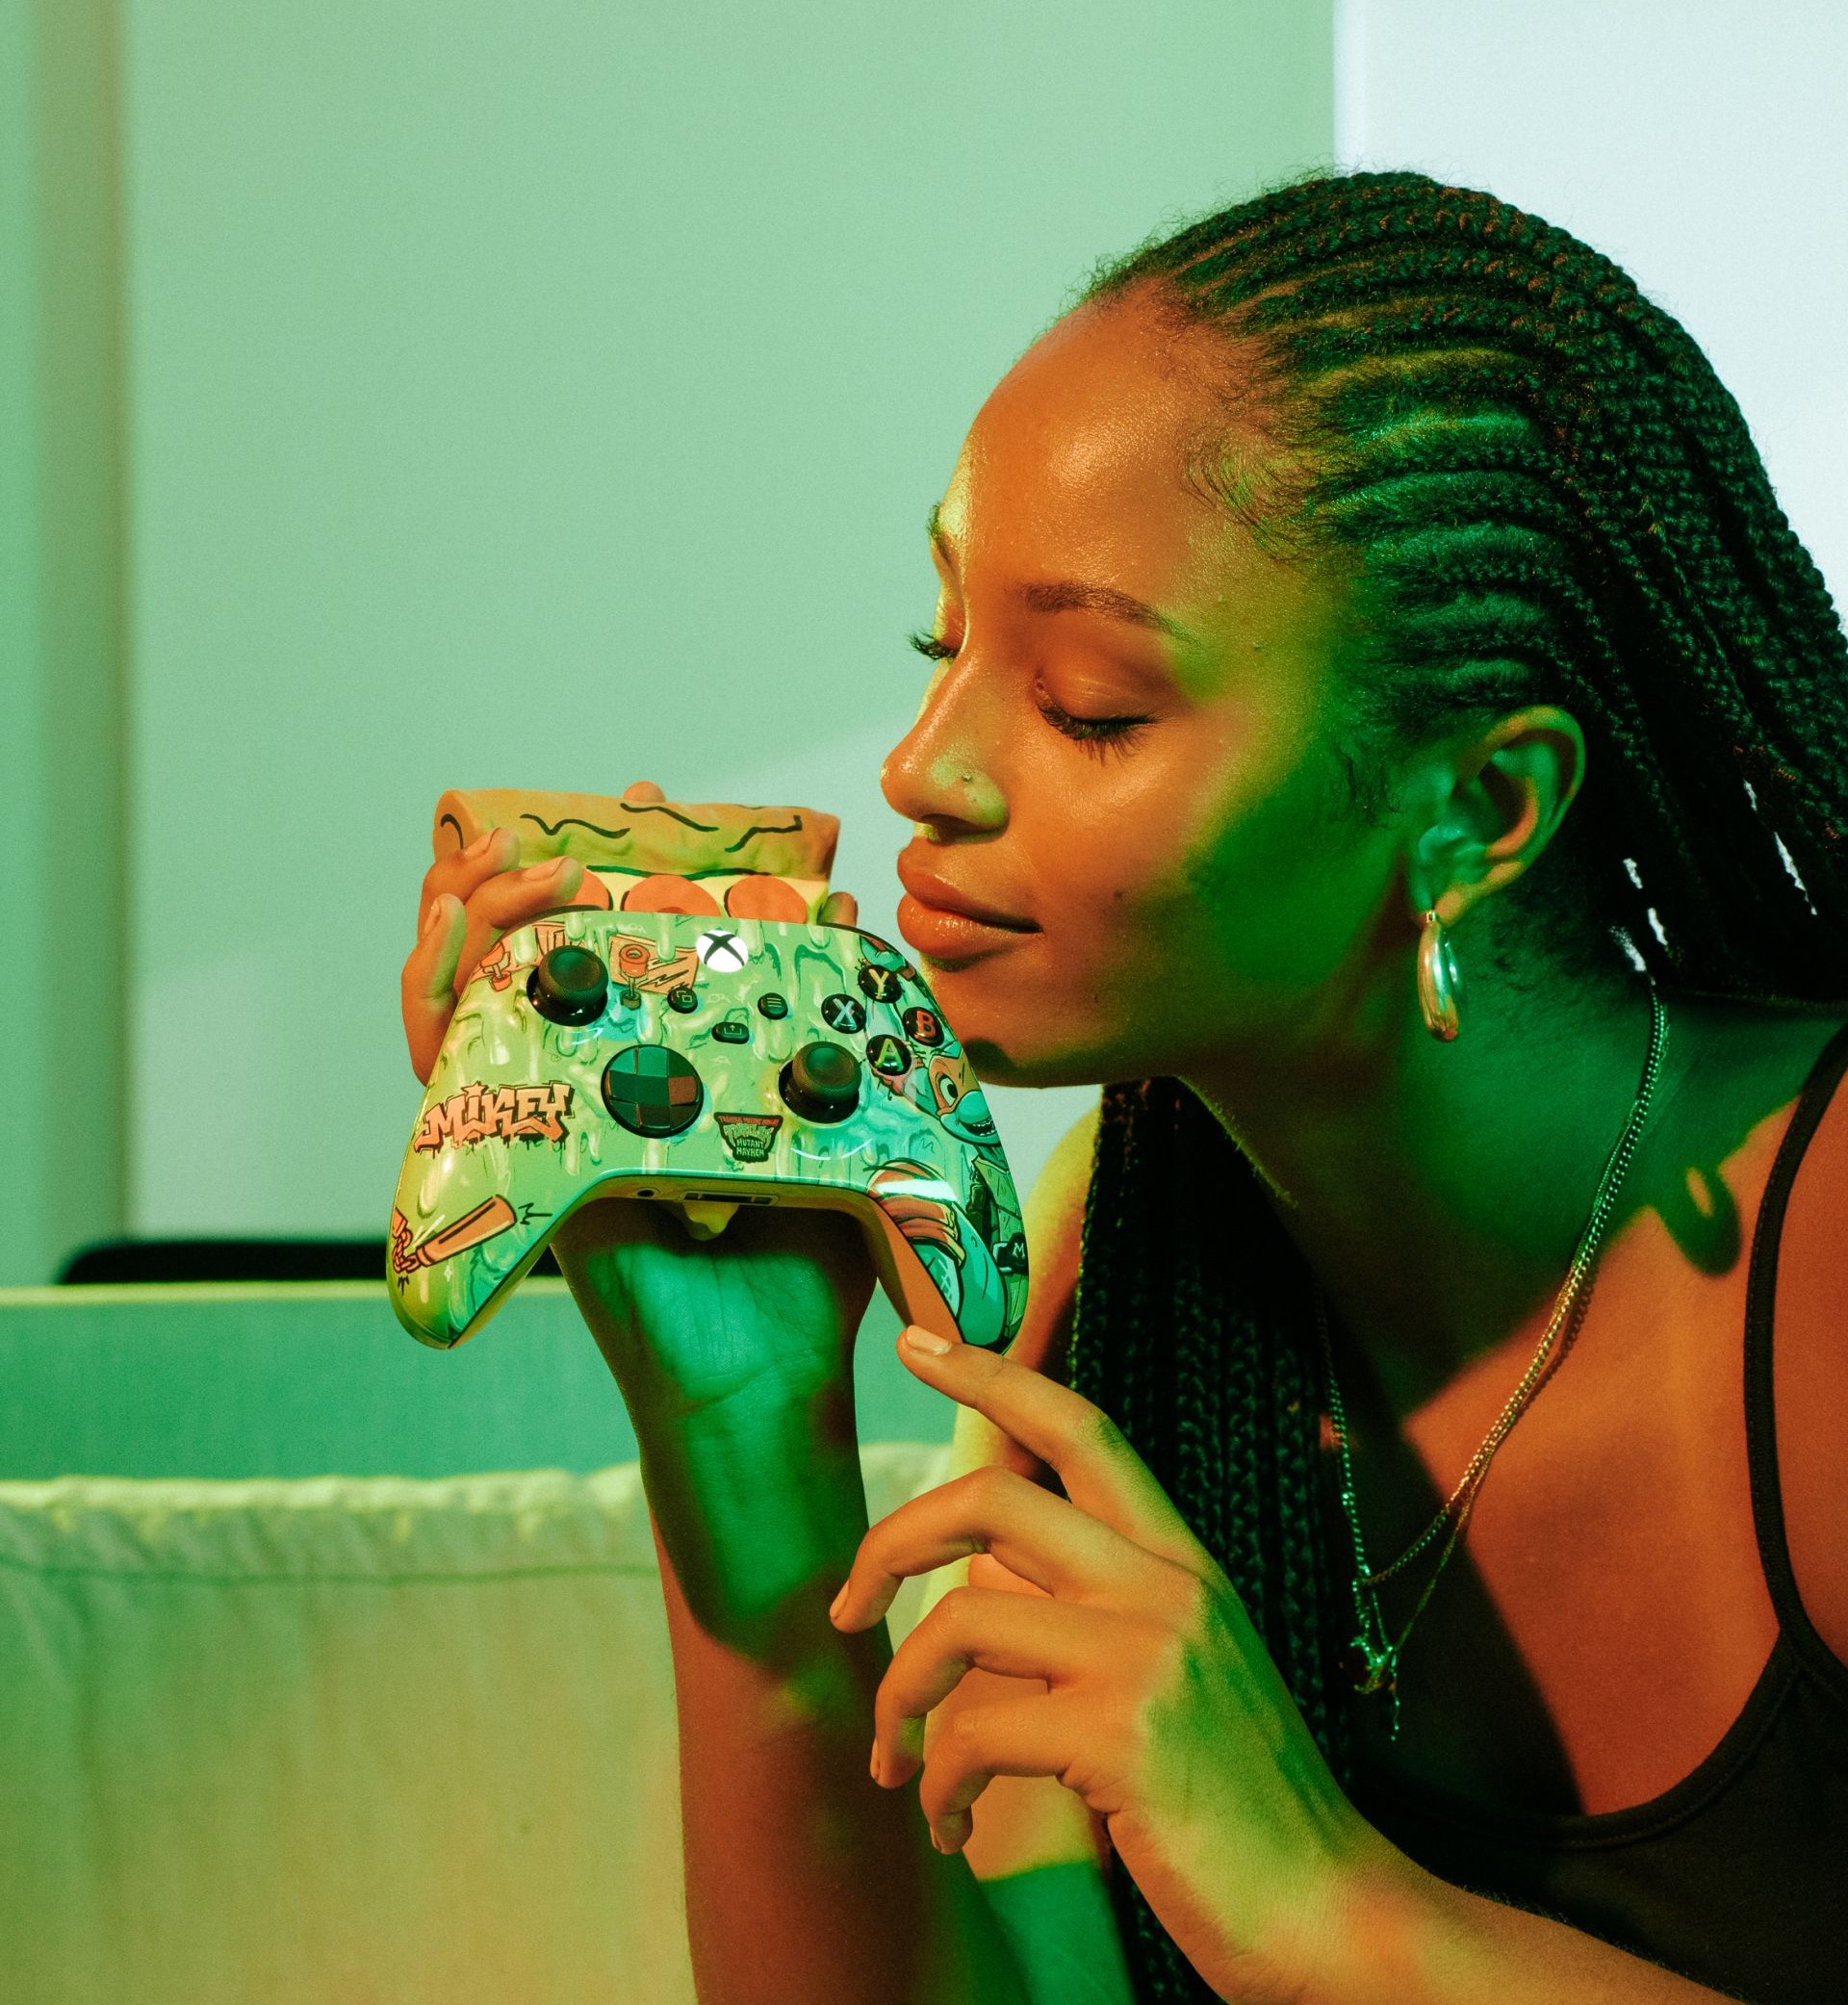 Xbox เปิดตัวคอนโทรลเลอร์ที่สามารถปล่อยกลิ่นอาหารได้ขณะเล่นเกม